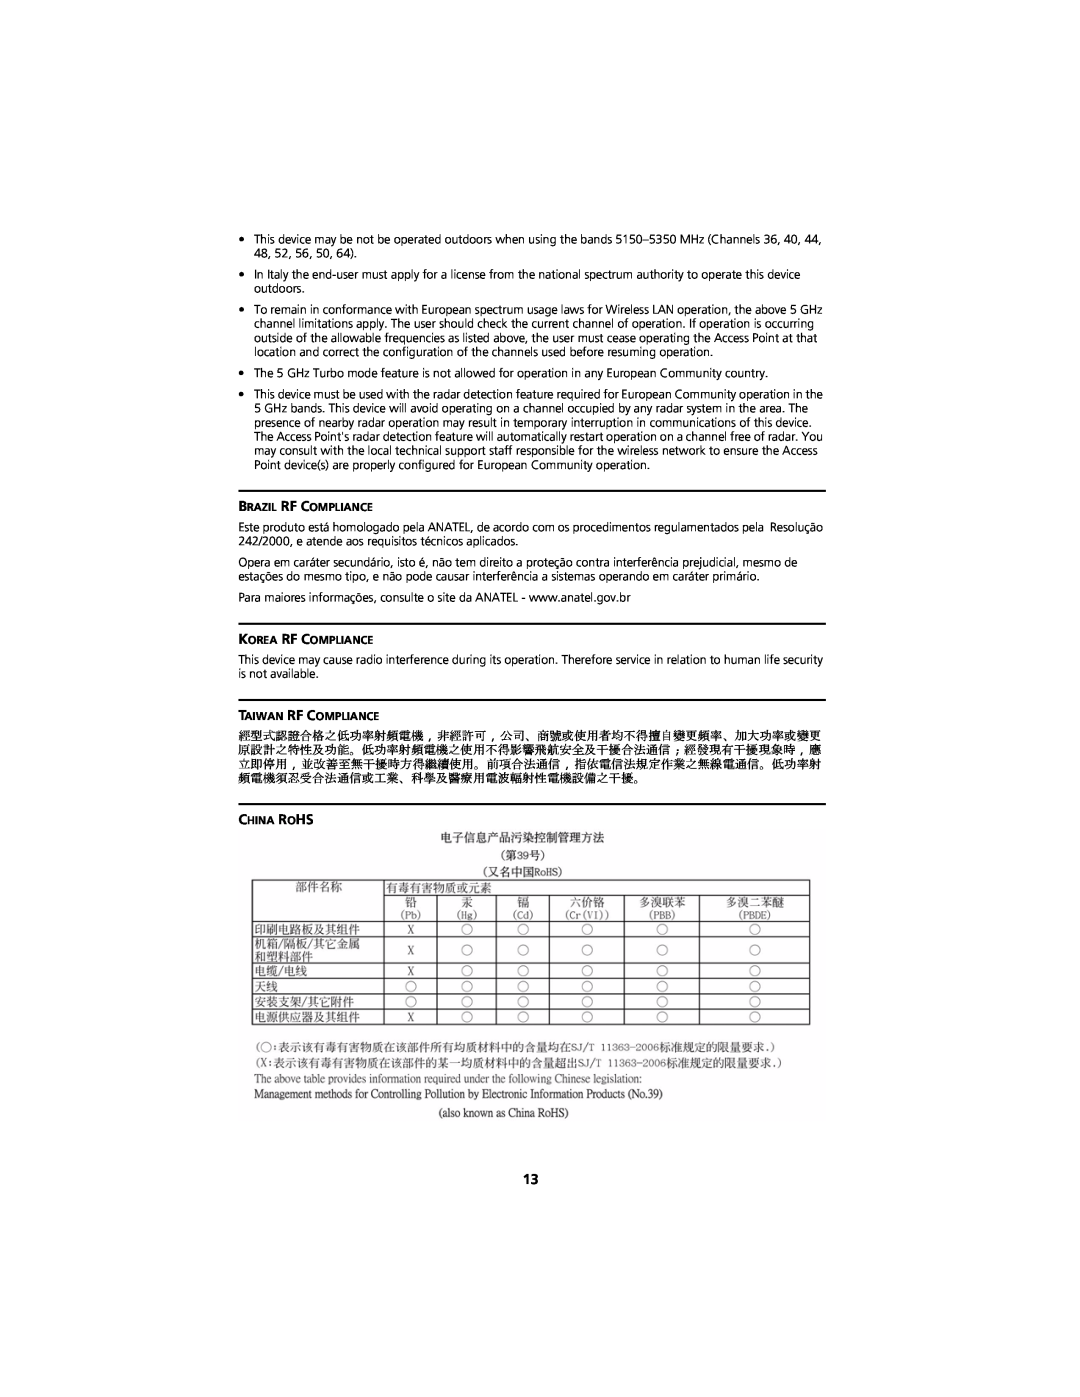 3Com WL-548A manual Brazil Rf Compliance, Korea Rf Compliance, Taiwan Rf Compliance, China Rohs 